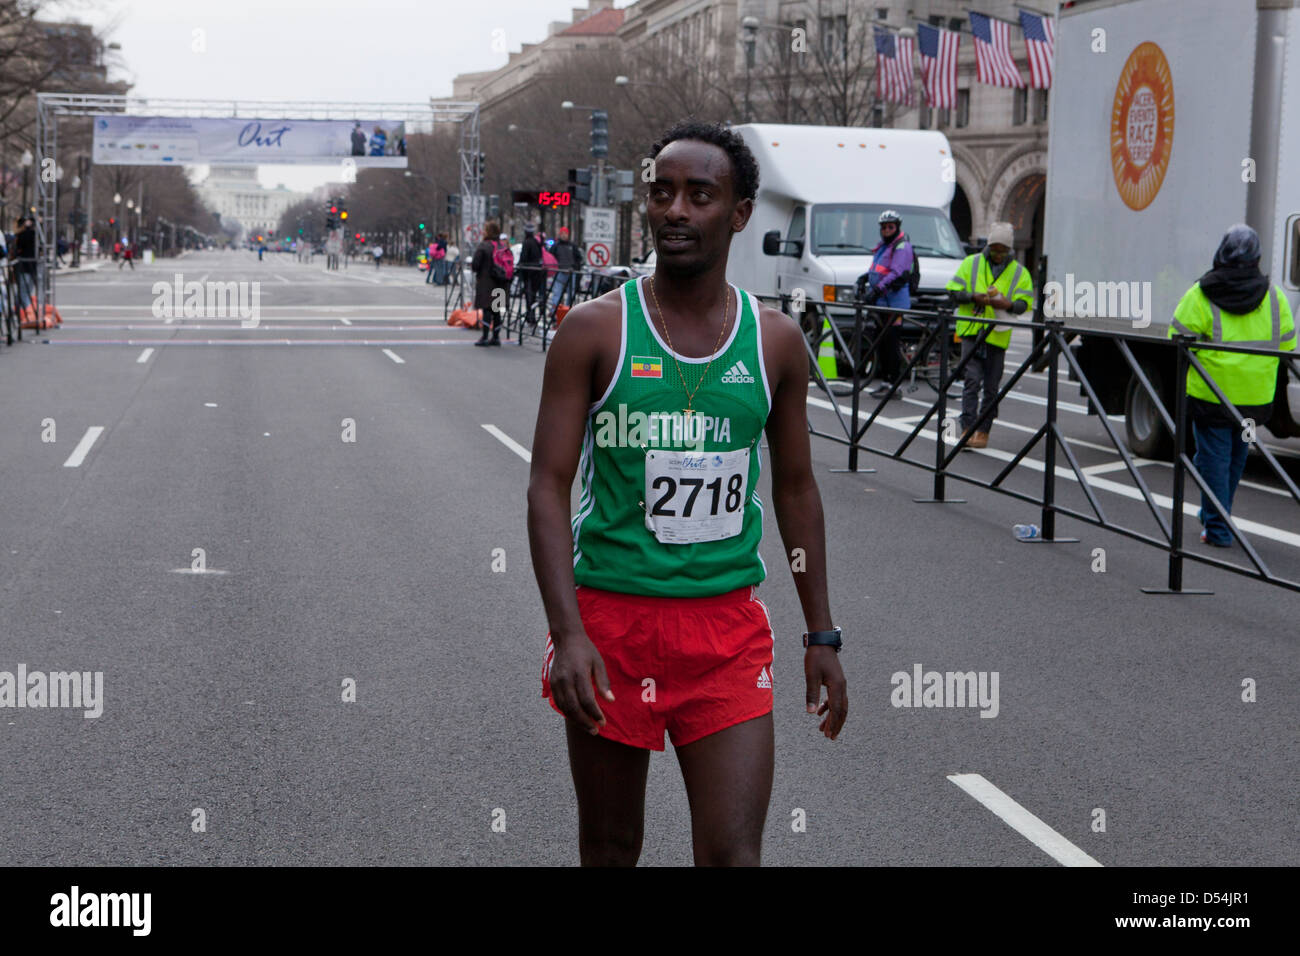 Corredor de maratón de Etiopía después de la carrera Foto de stock